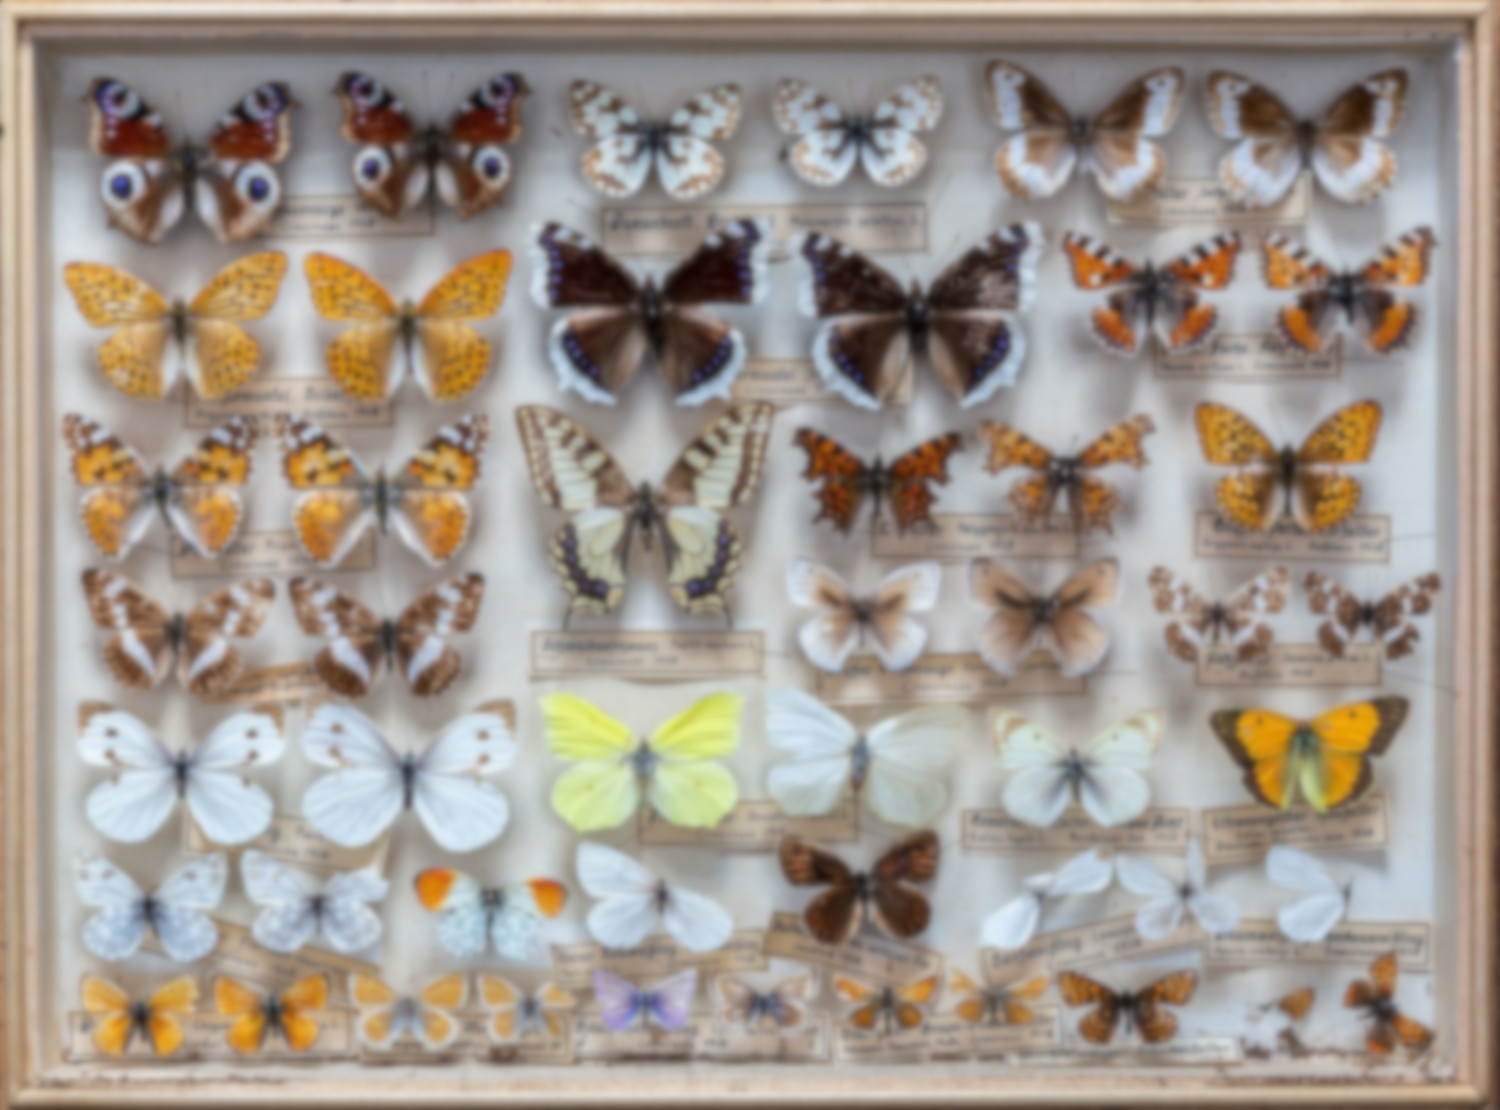 Foto: Schaukasten mit nebeneinander aufgereihten Schmetterlingen.